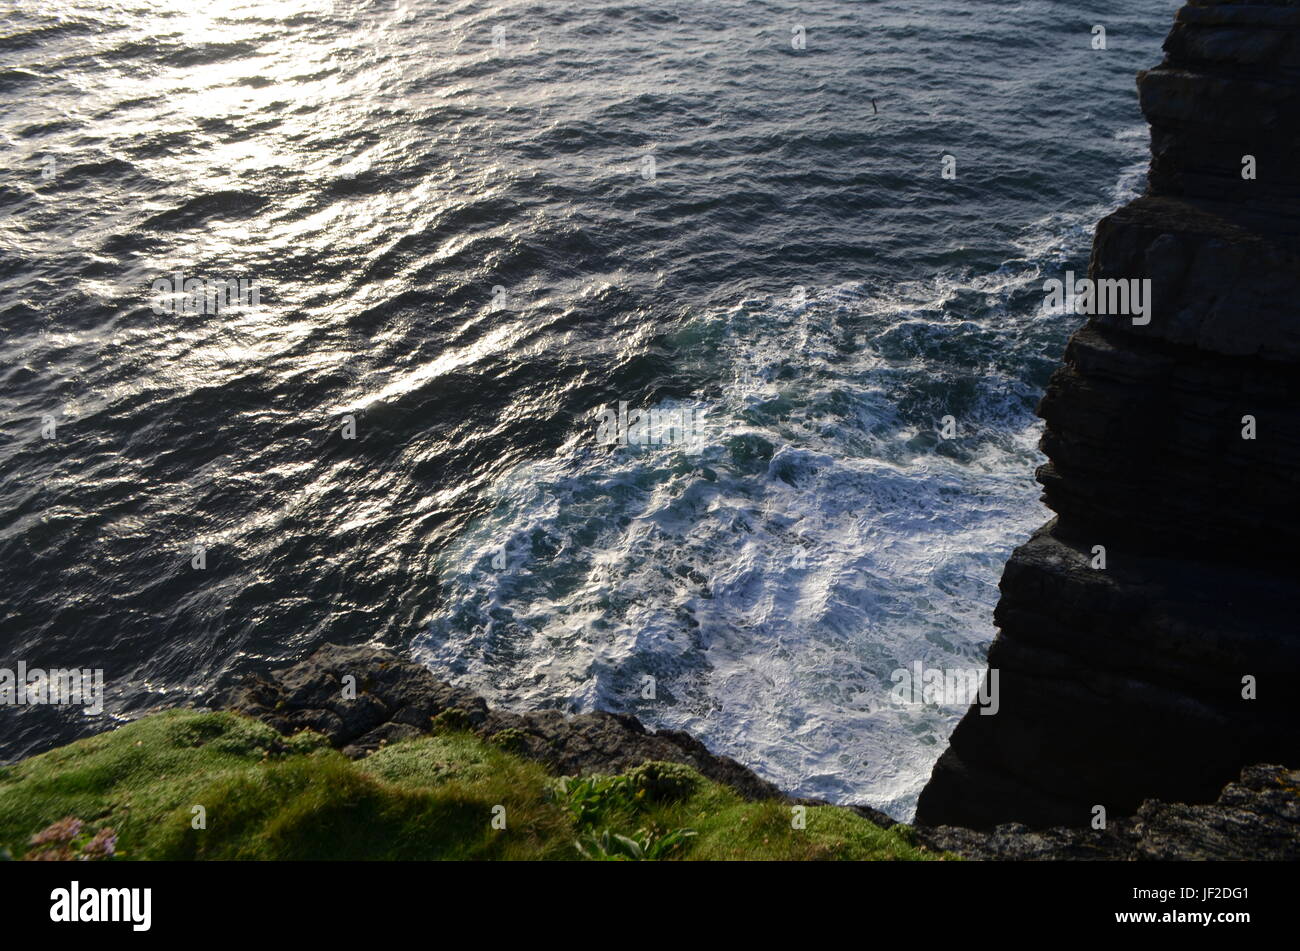 Vista al mar desde los acantilados de la península de Loop Head en Clare, Irlanda Foto de stock